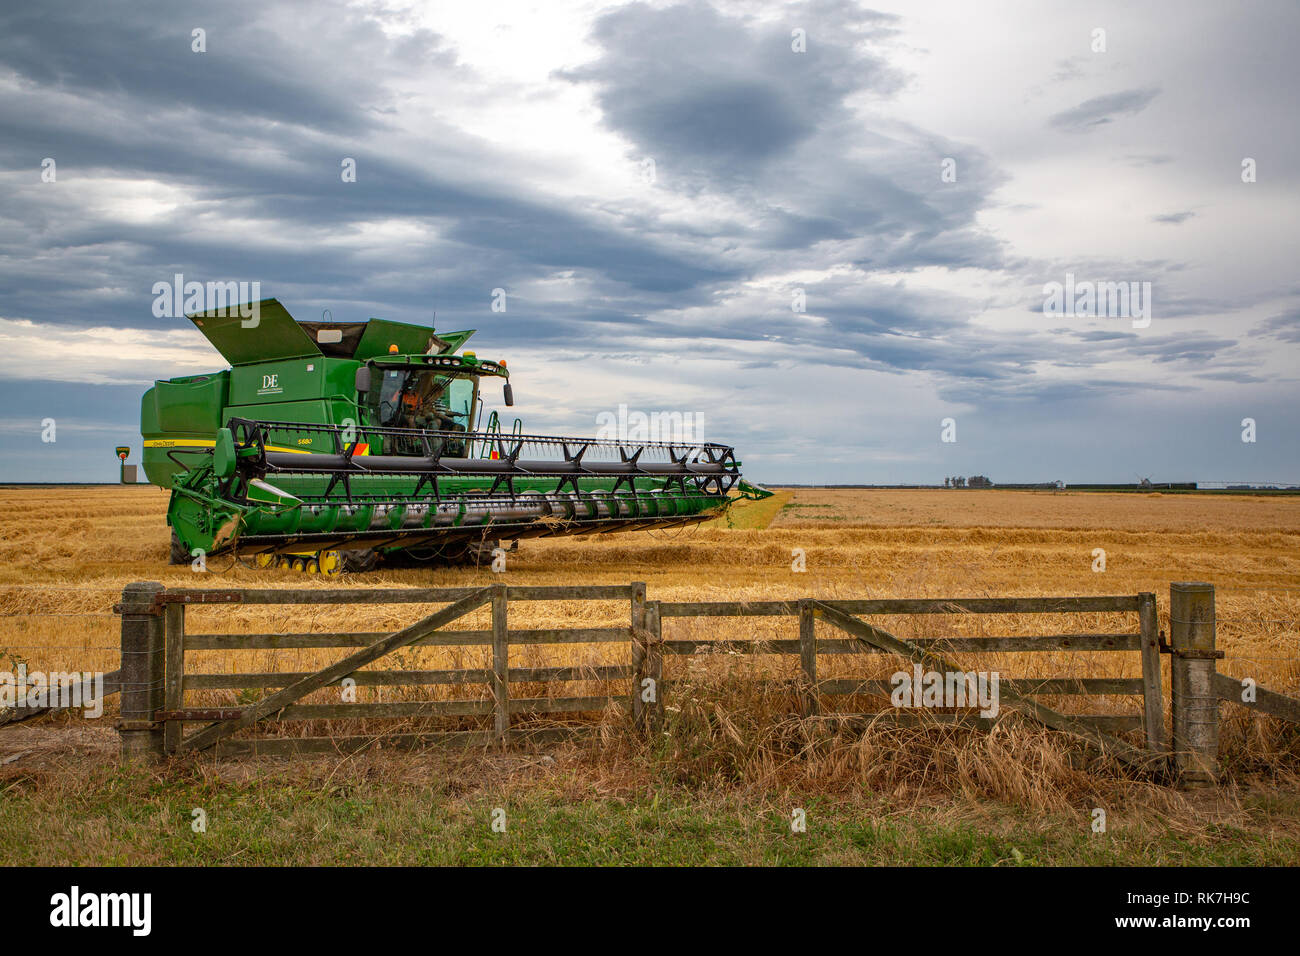 Une moissonneuse-batteuse John Deere vert tourne à la fin d'une ligne dans un champ de céréales sur une ferme rurale, Dorie, Canterbury, Nouvelle-Zélande Banque D'Images